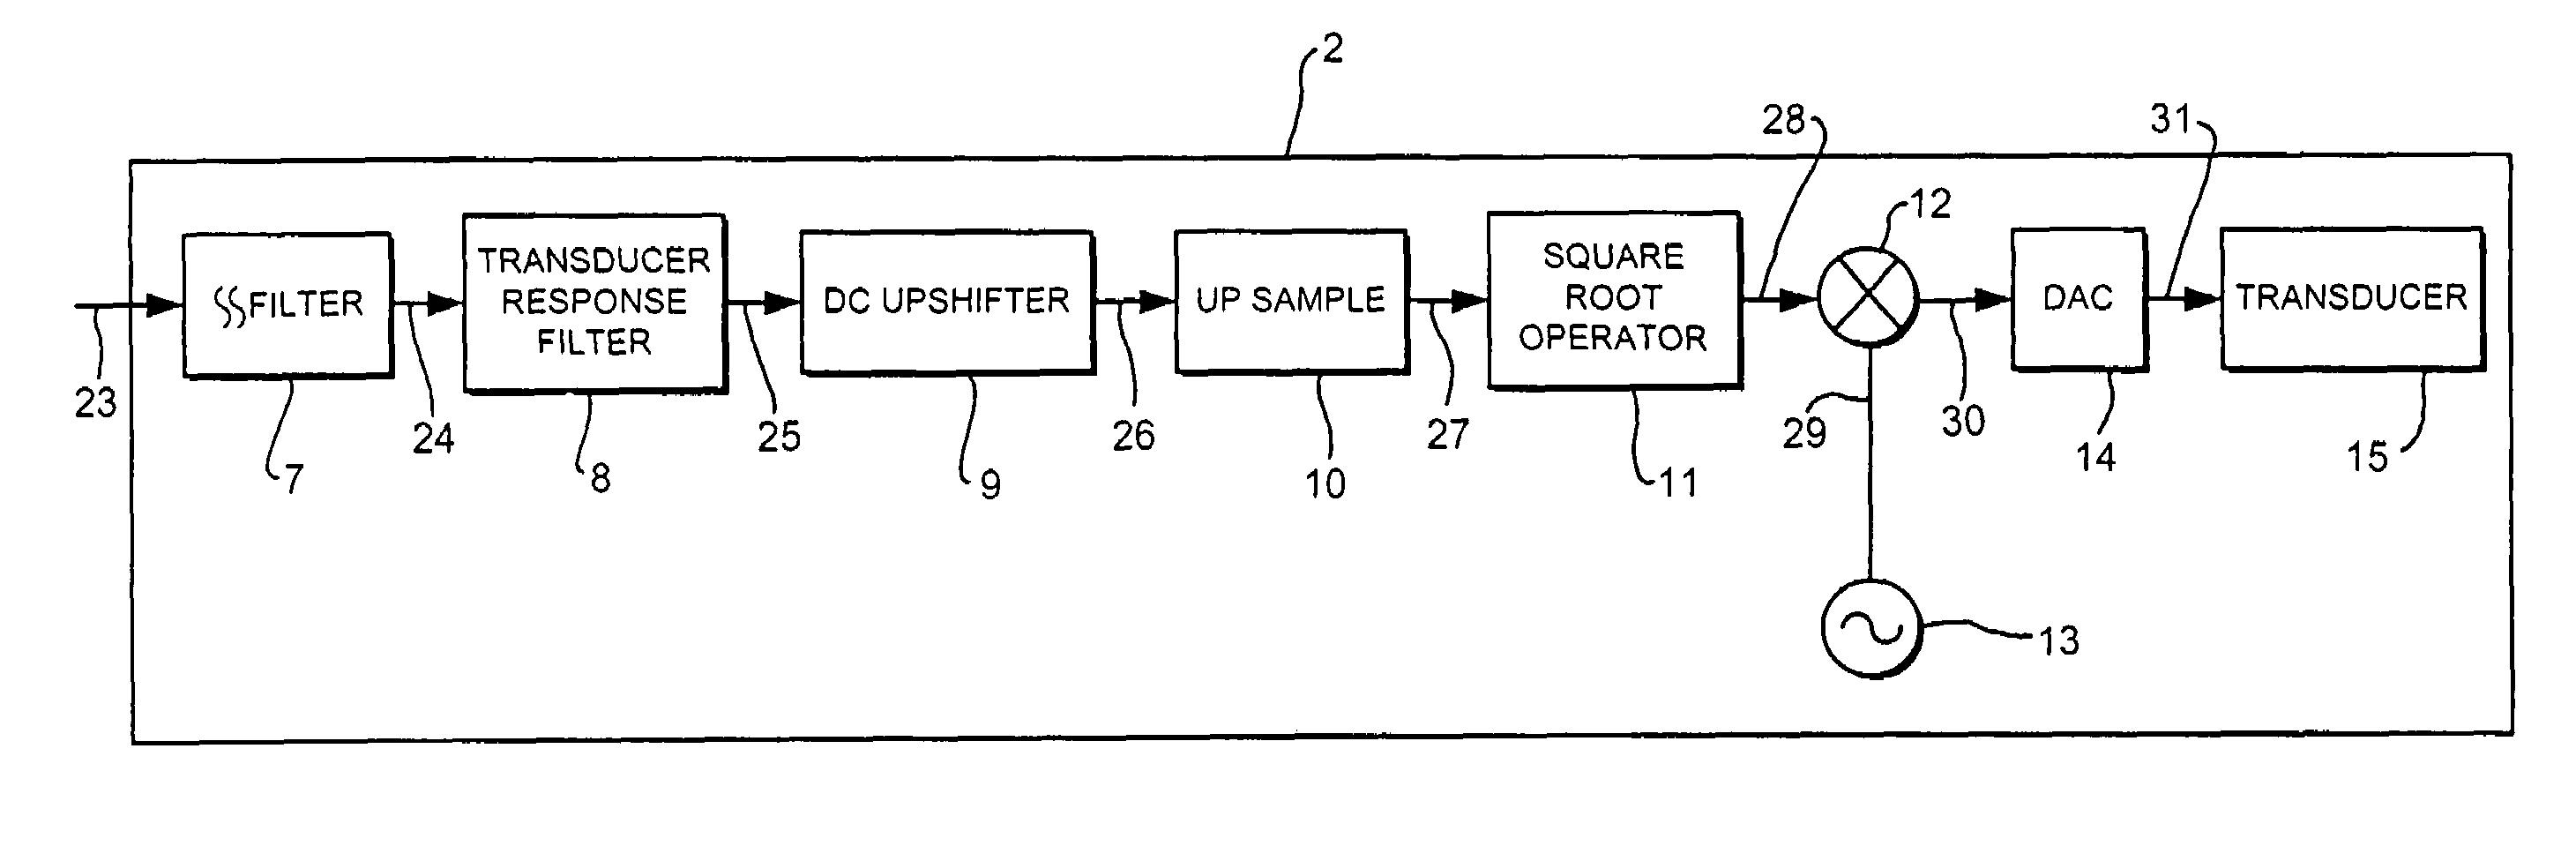 Audio apparatus